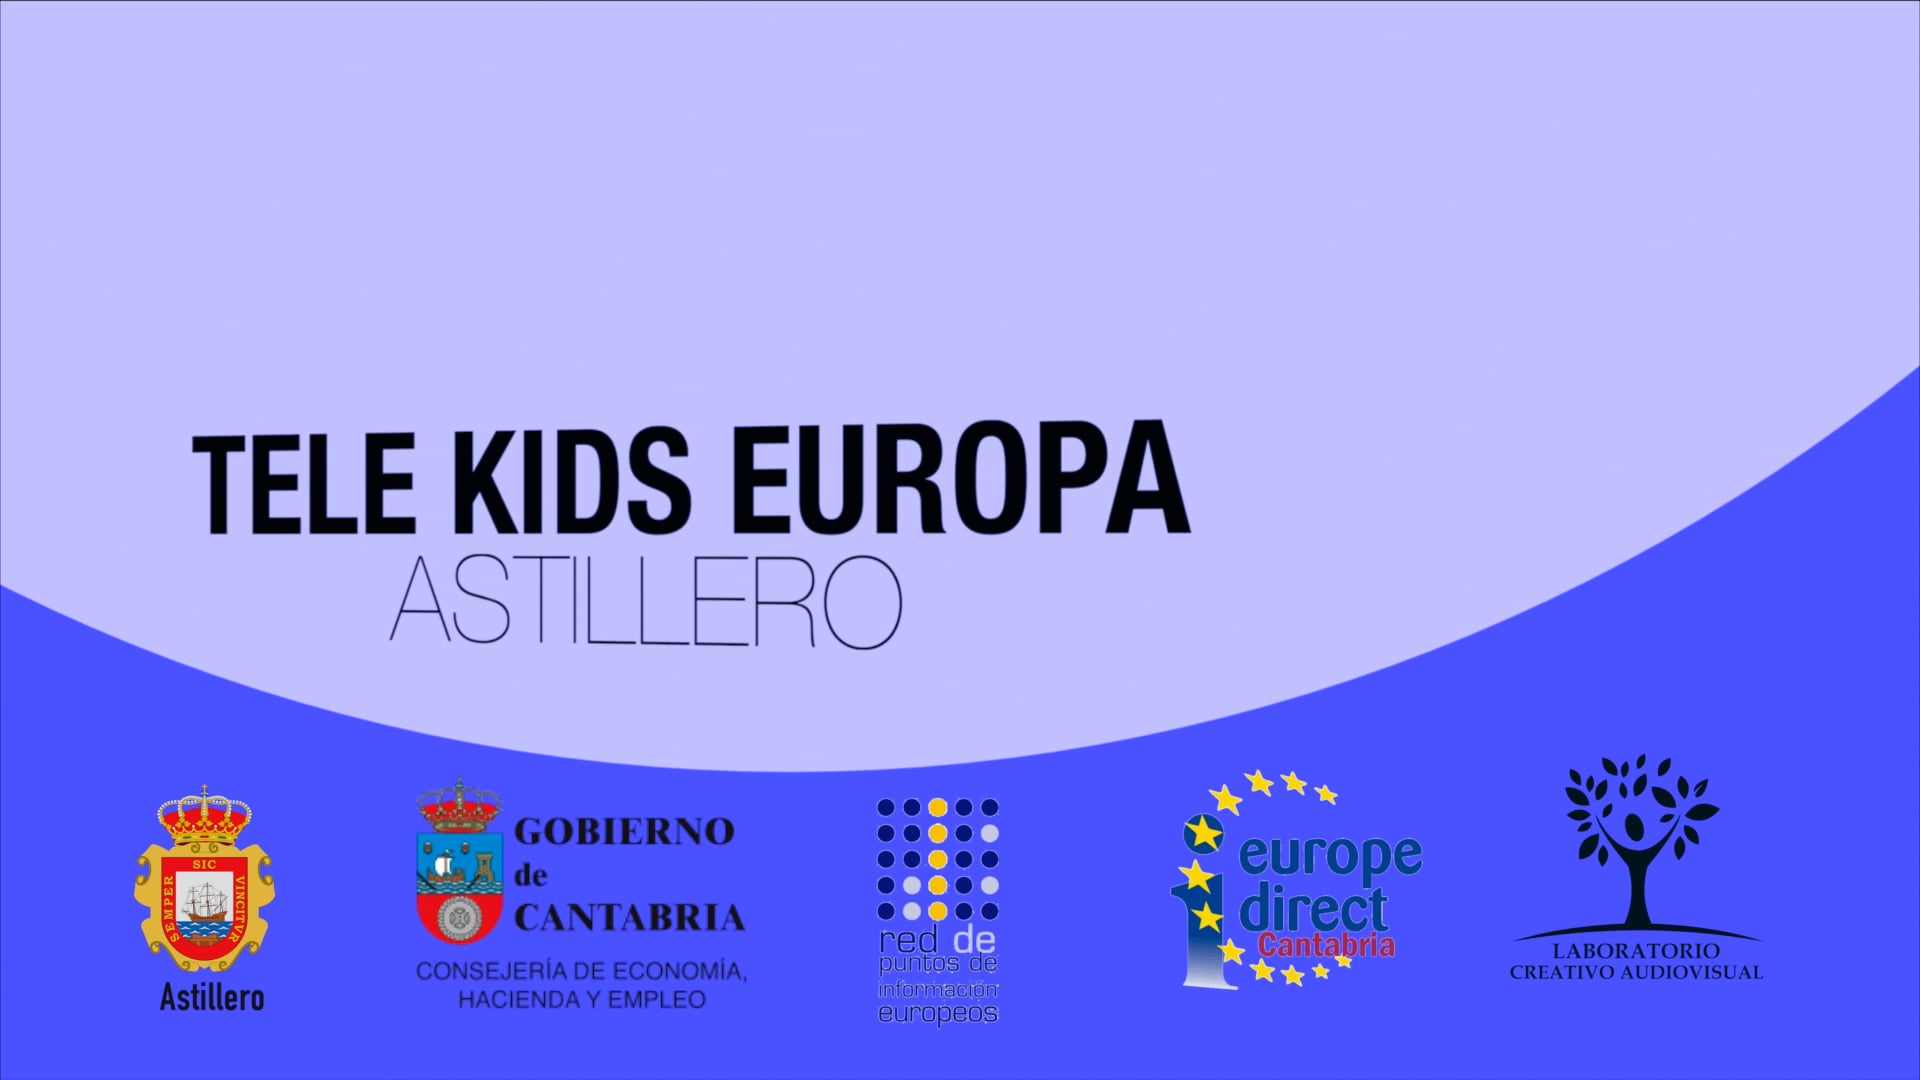 TELE KIDS EUROPA, ASTILLERO 2021